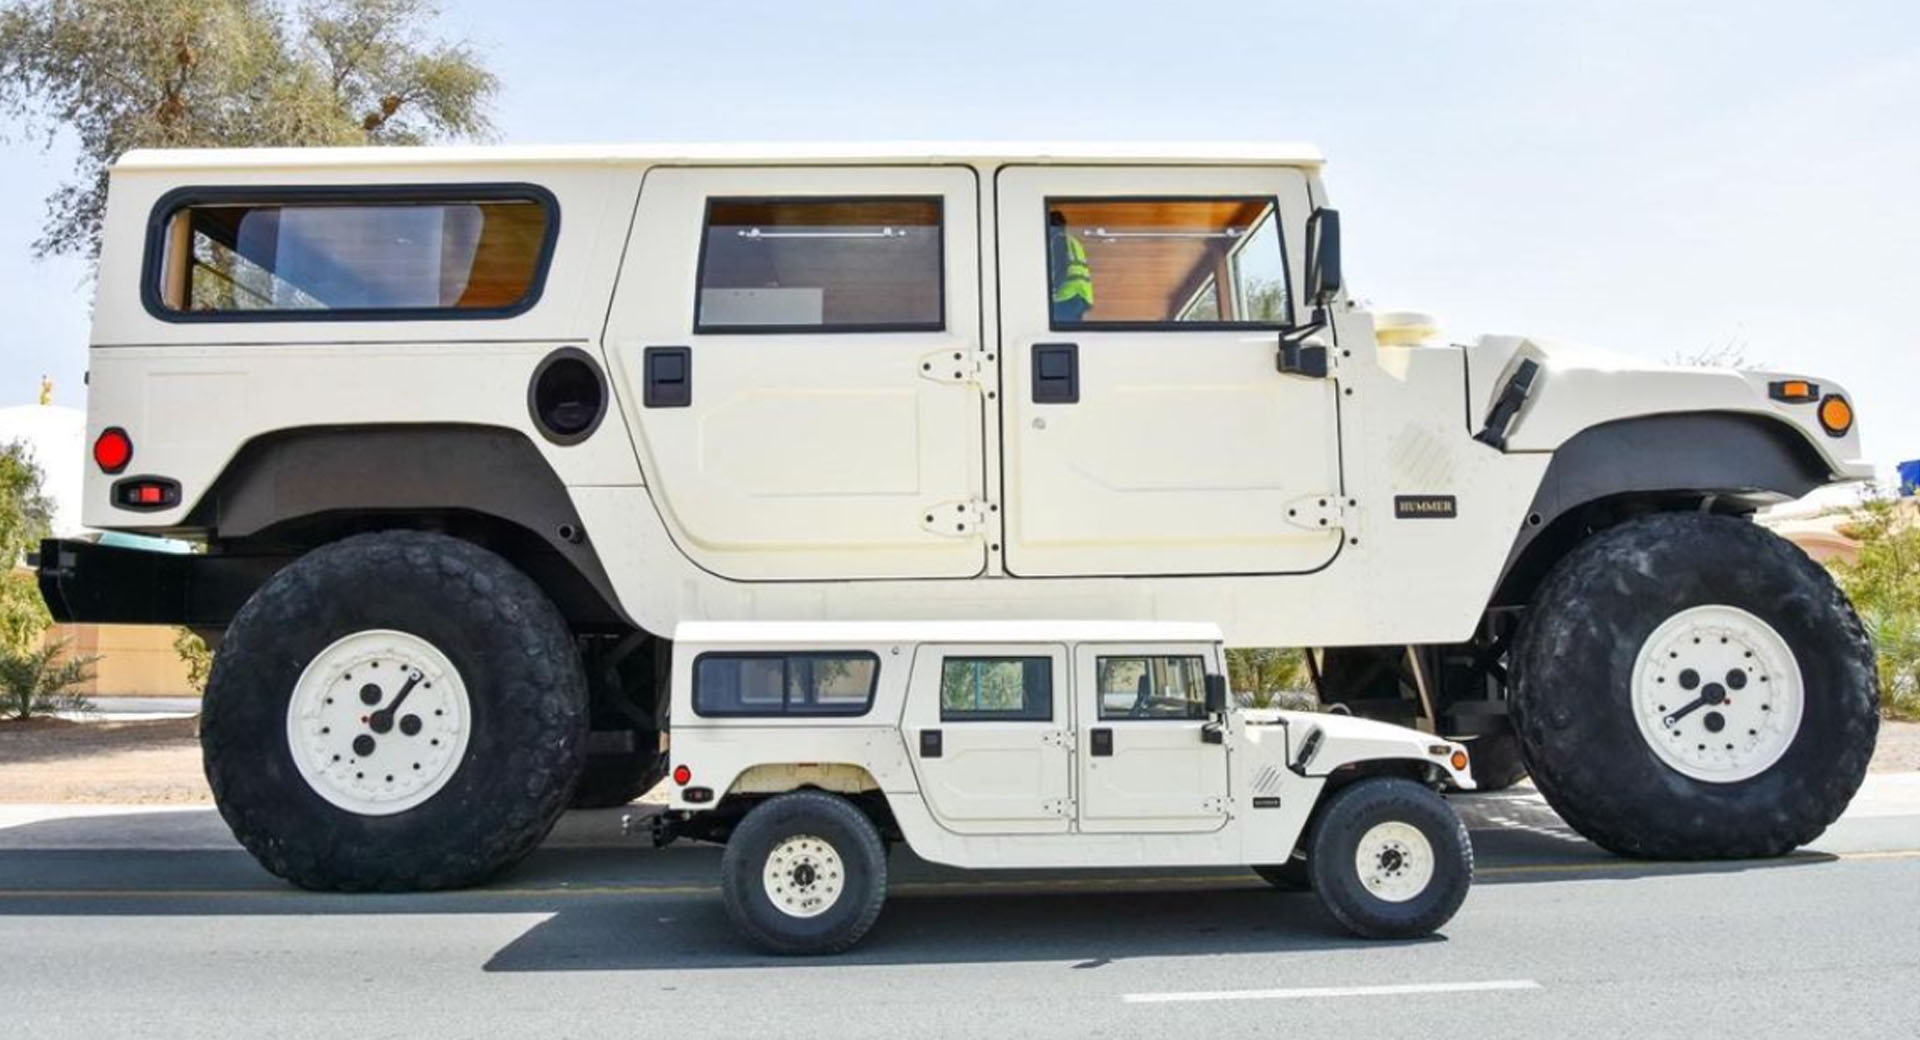 Sheikh Hamad bin Hamdan Al Nahyan’s Giant Hummer H1 “X3”